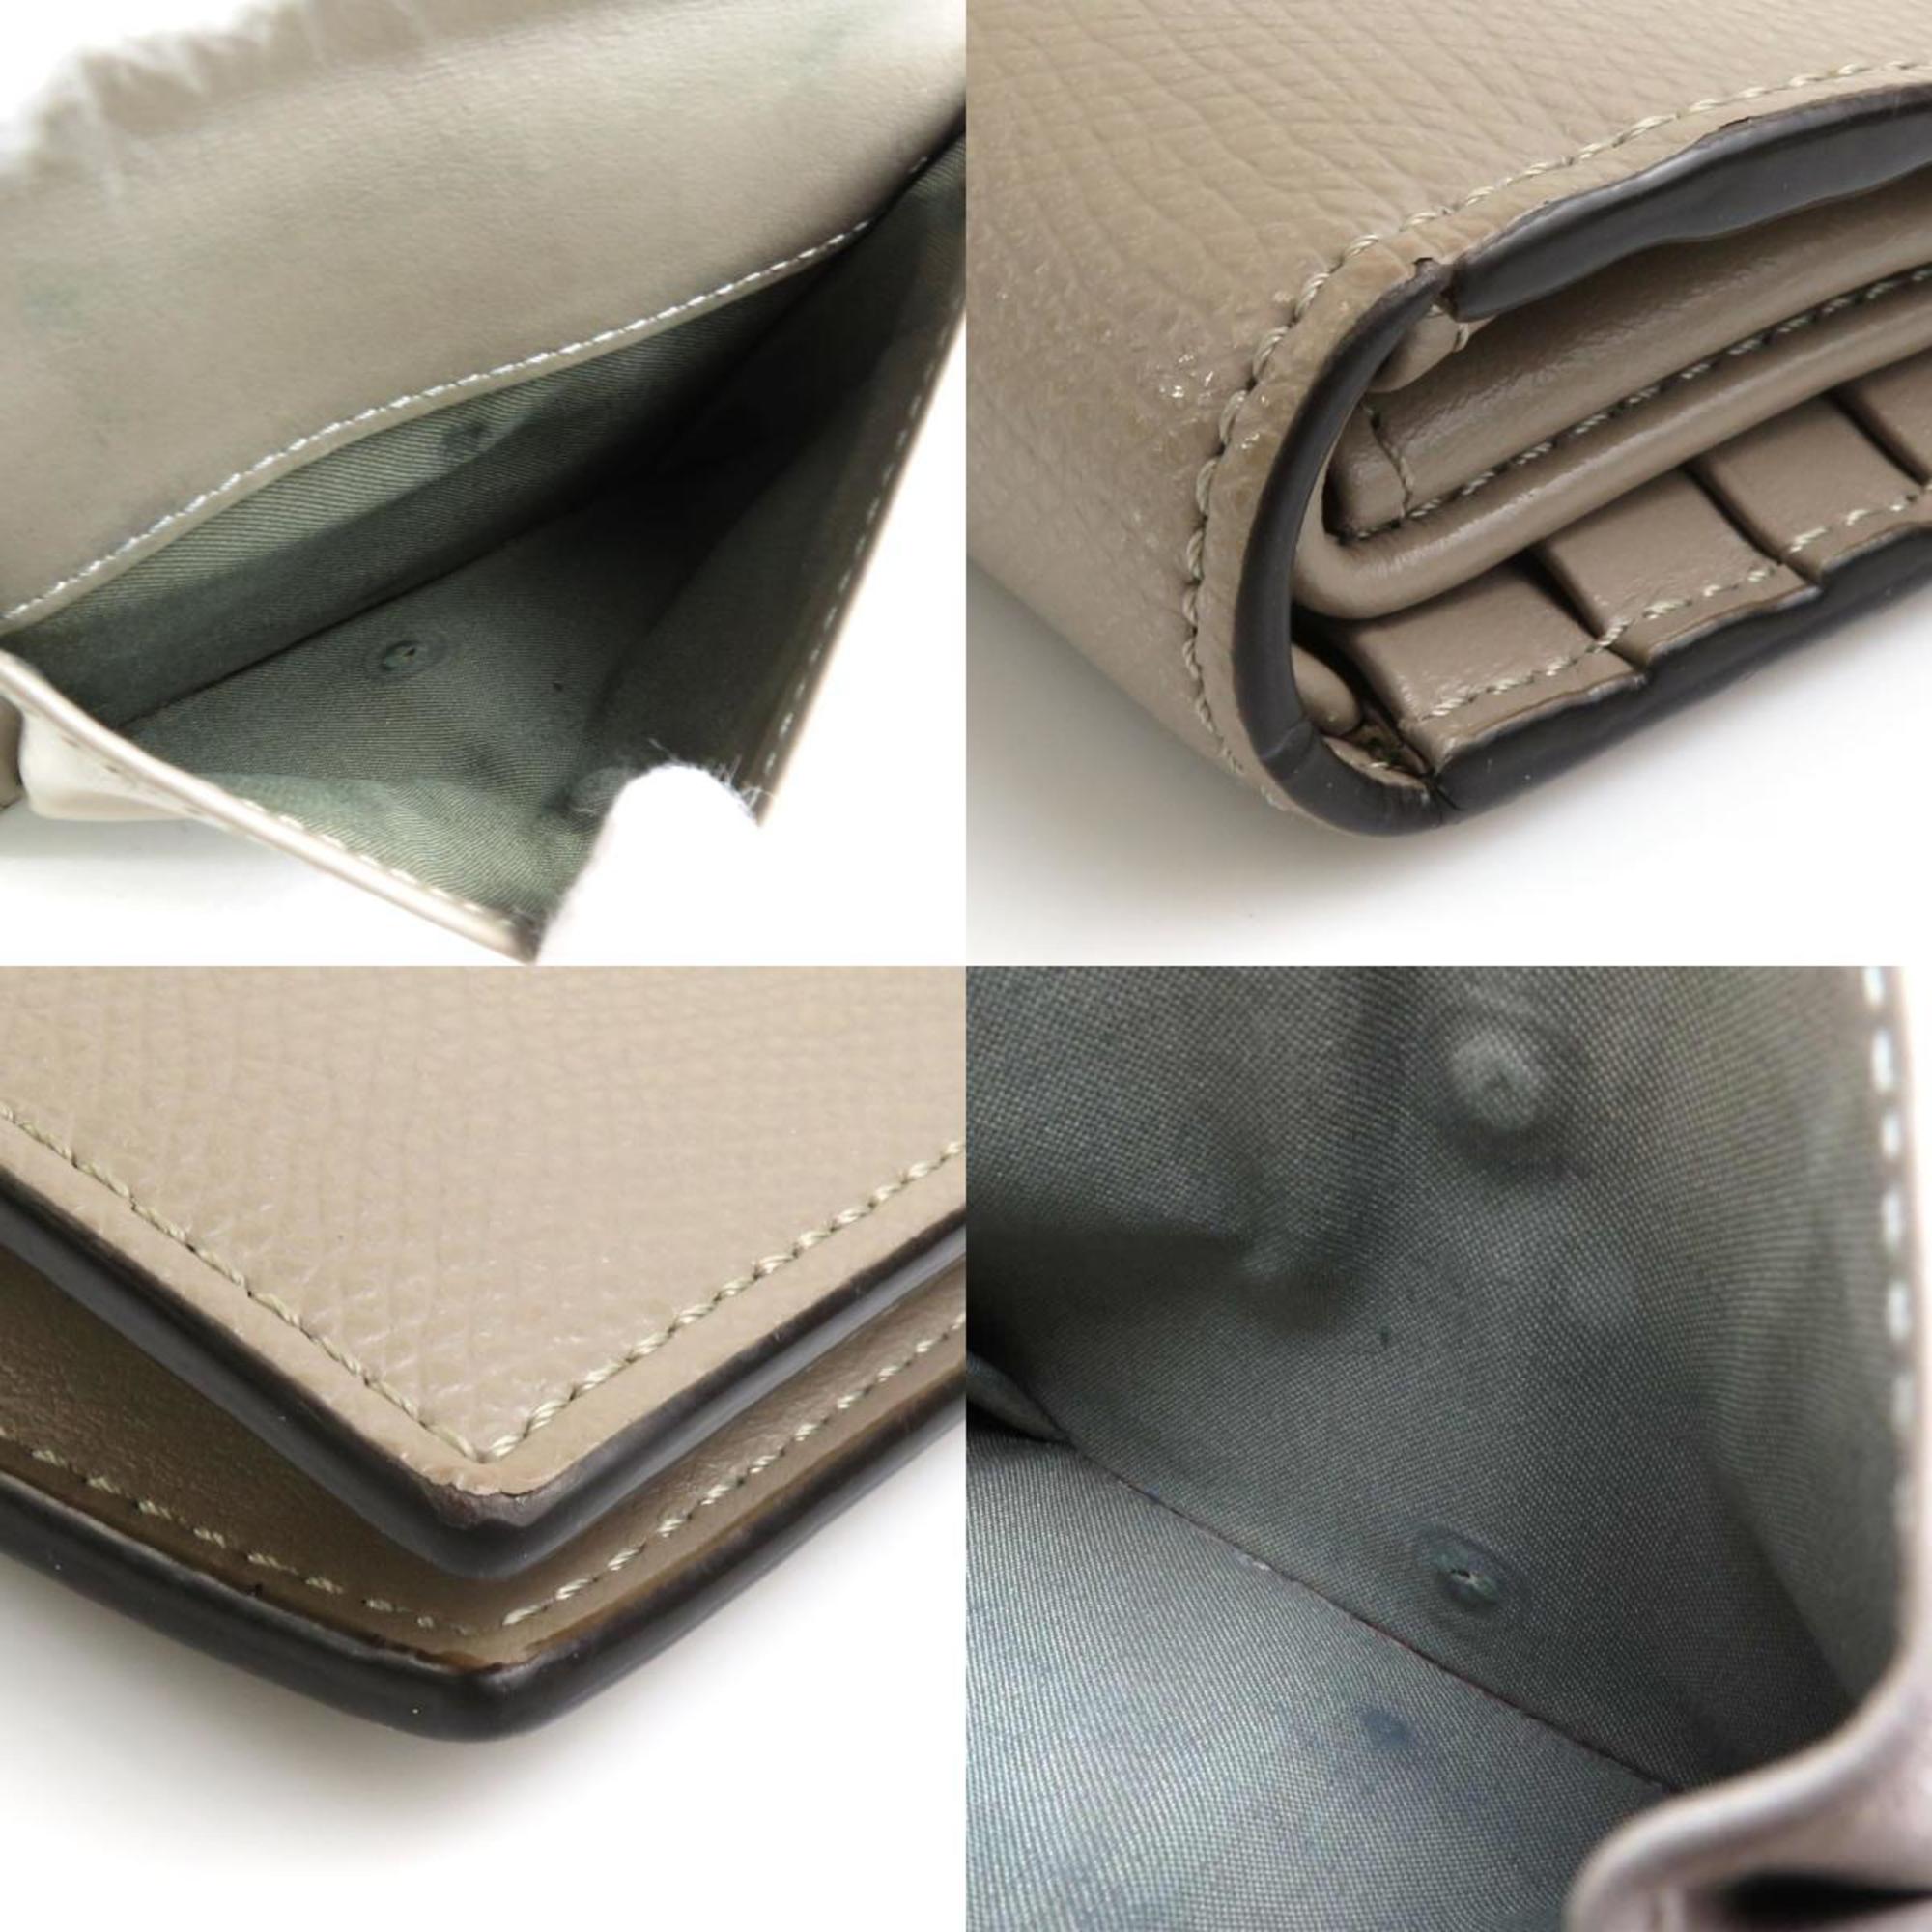 FENDI Bifold Wallet Leather Beige Unisex 8M0387-A18B